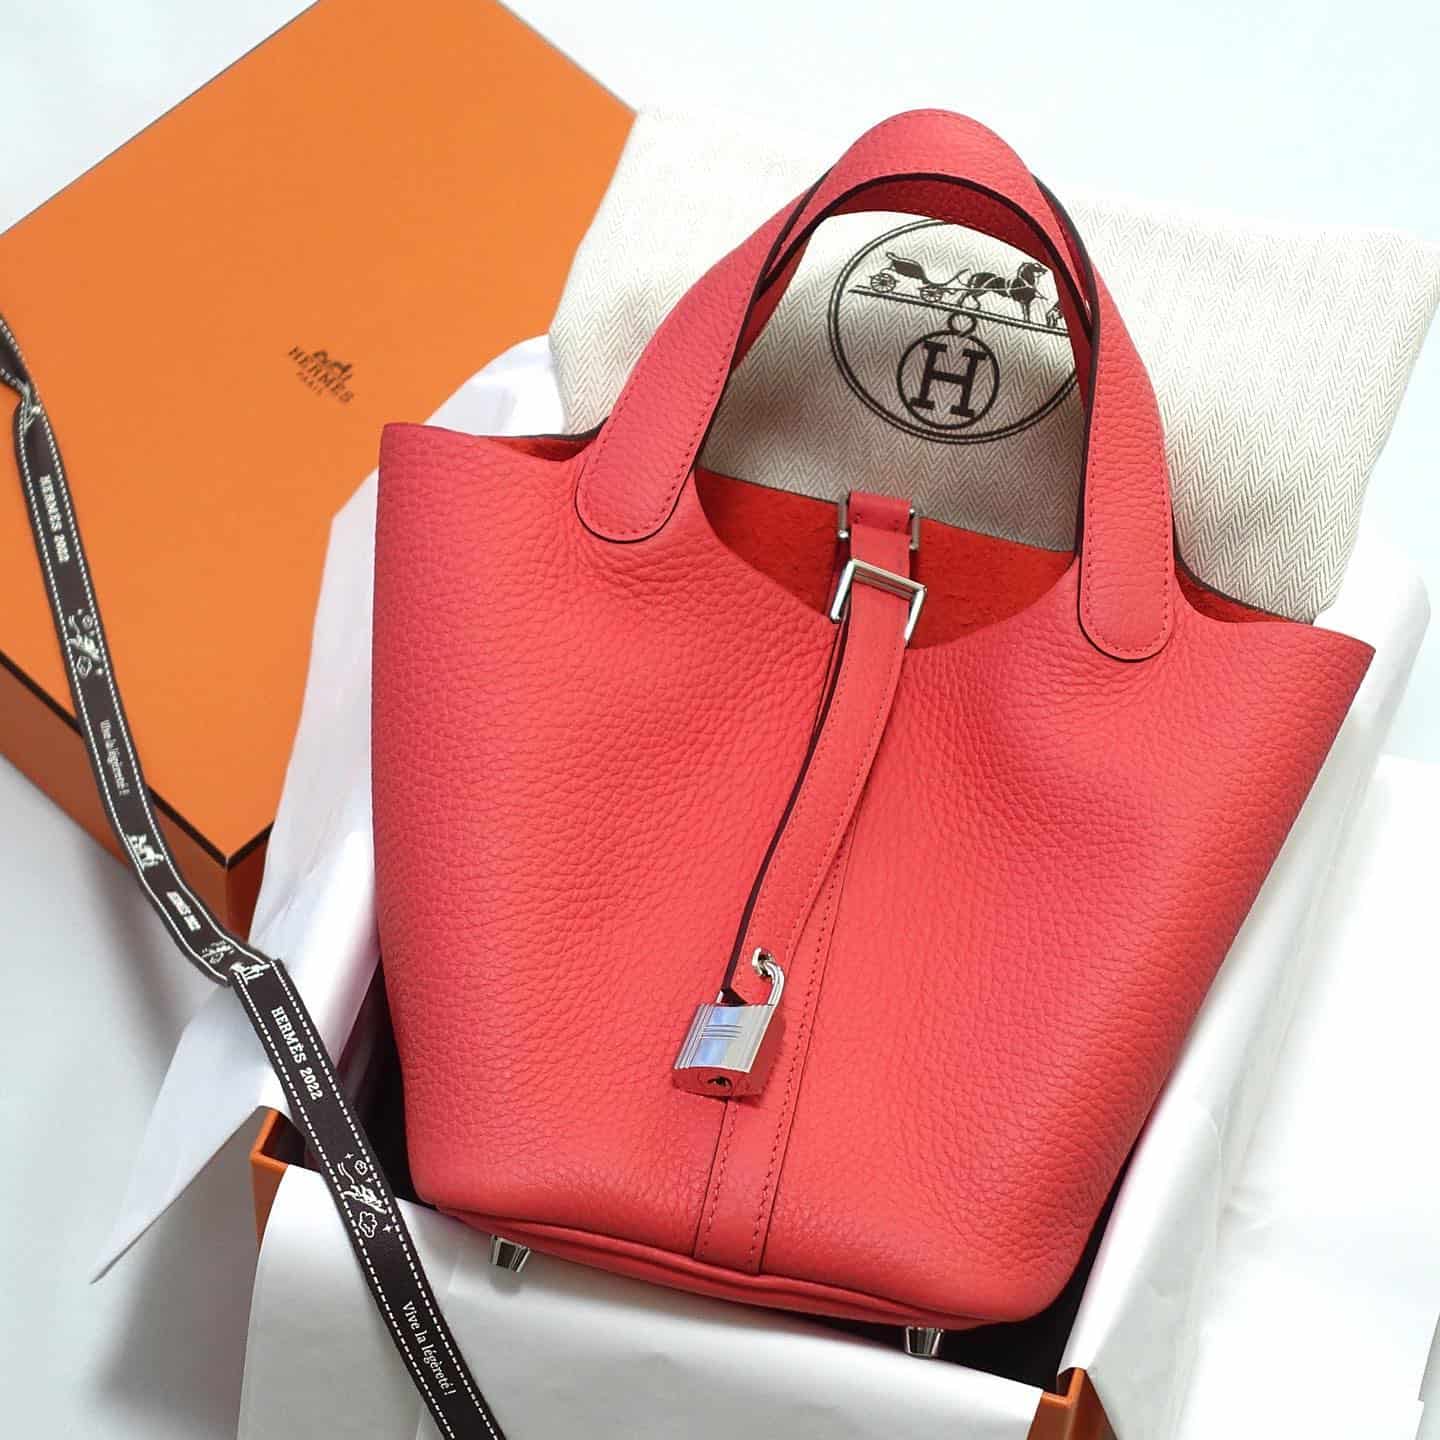 Hermes Picotin Bag design